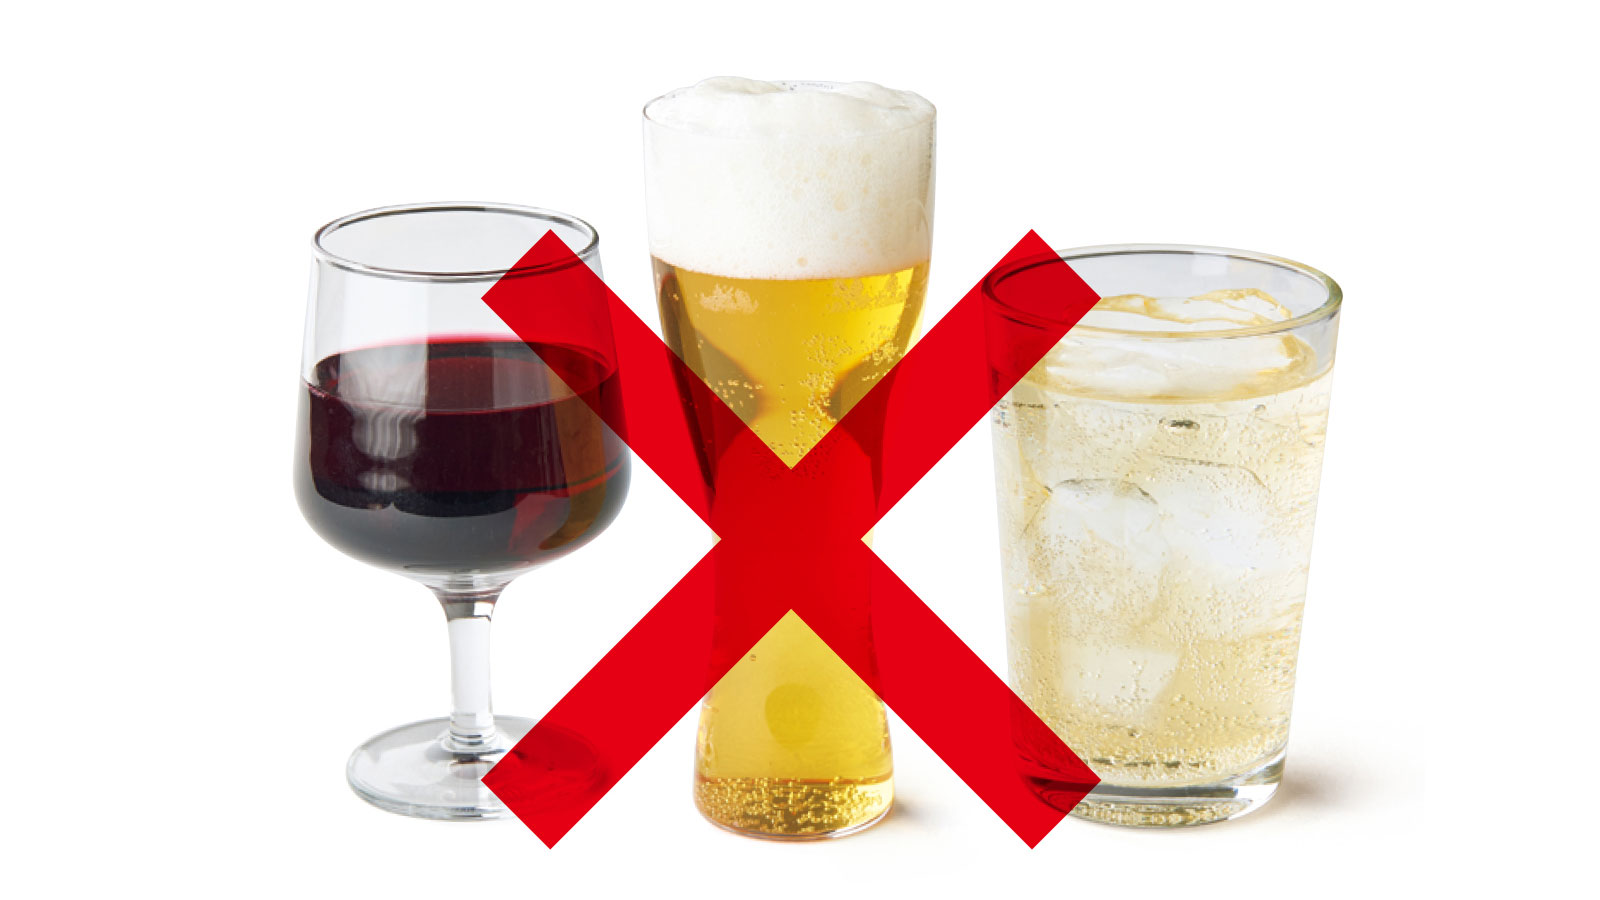 腹を割る 食事のルール 基本は断酒。飲むならアルコールフリーで